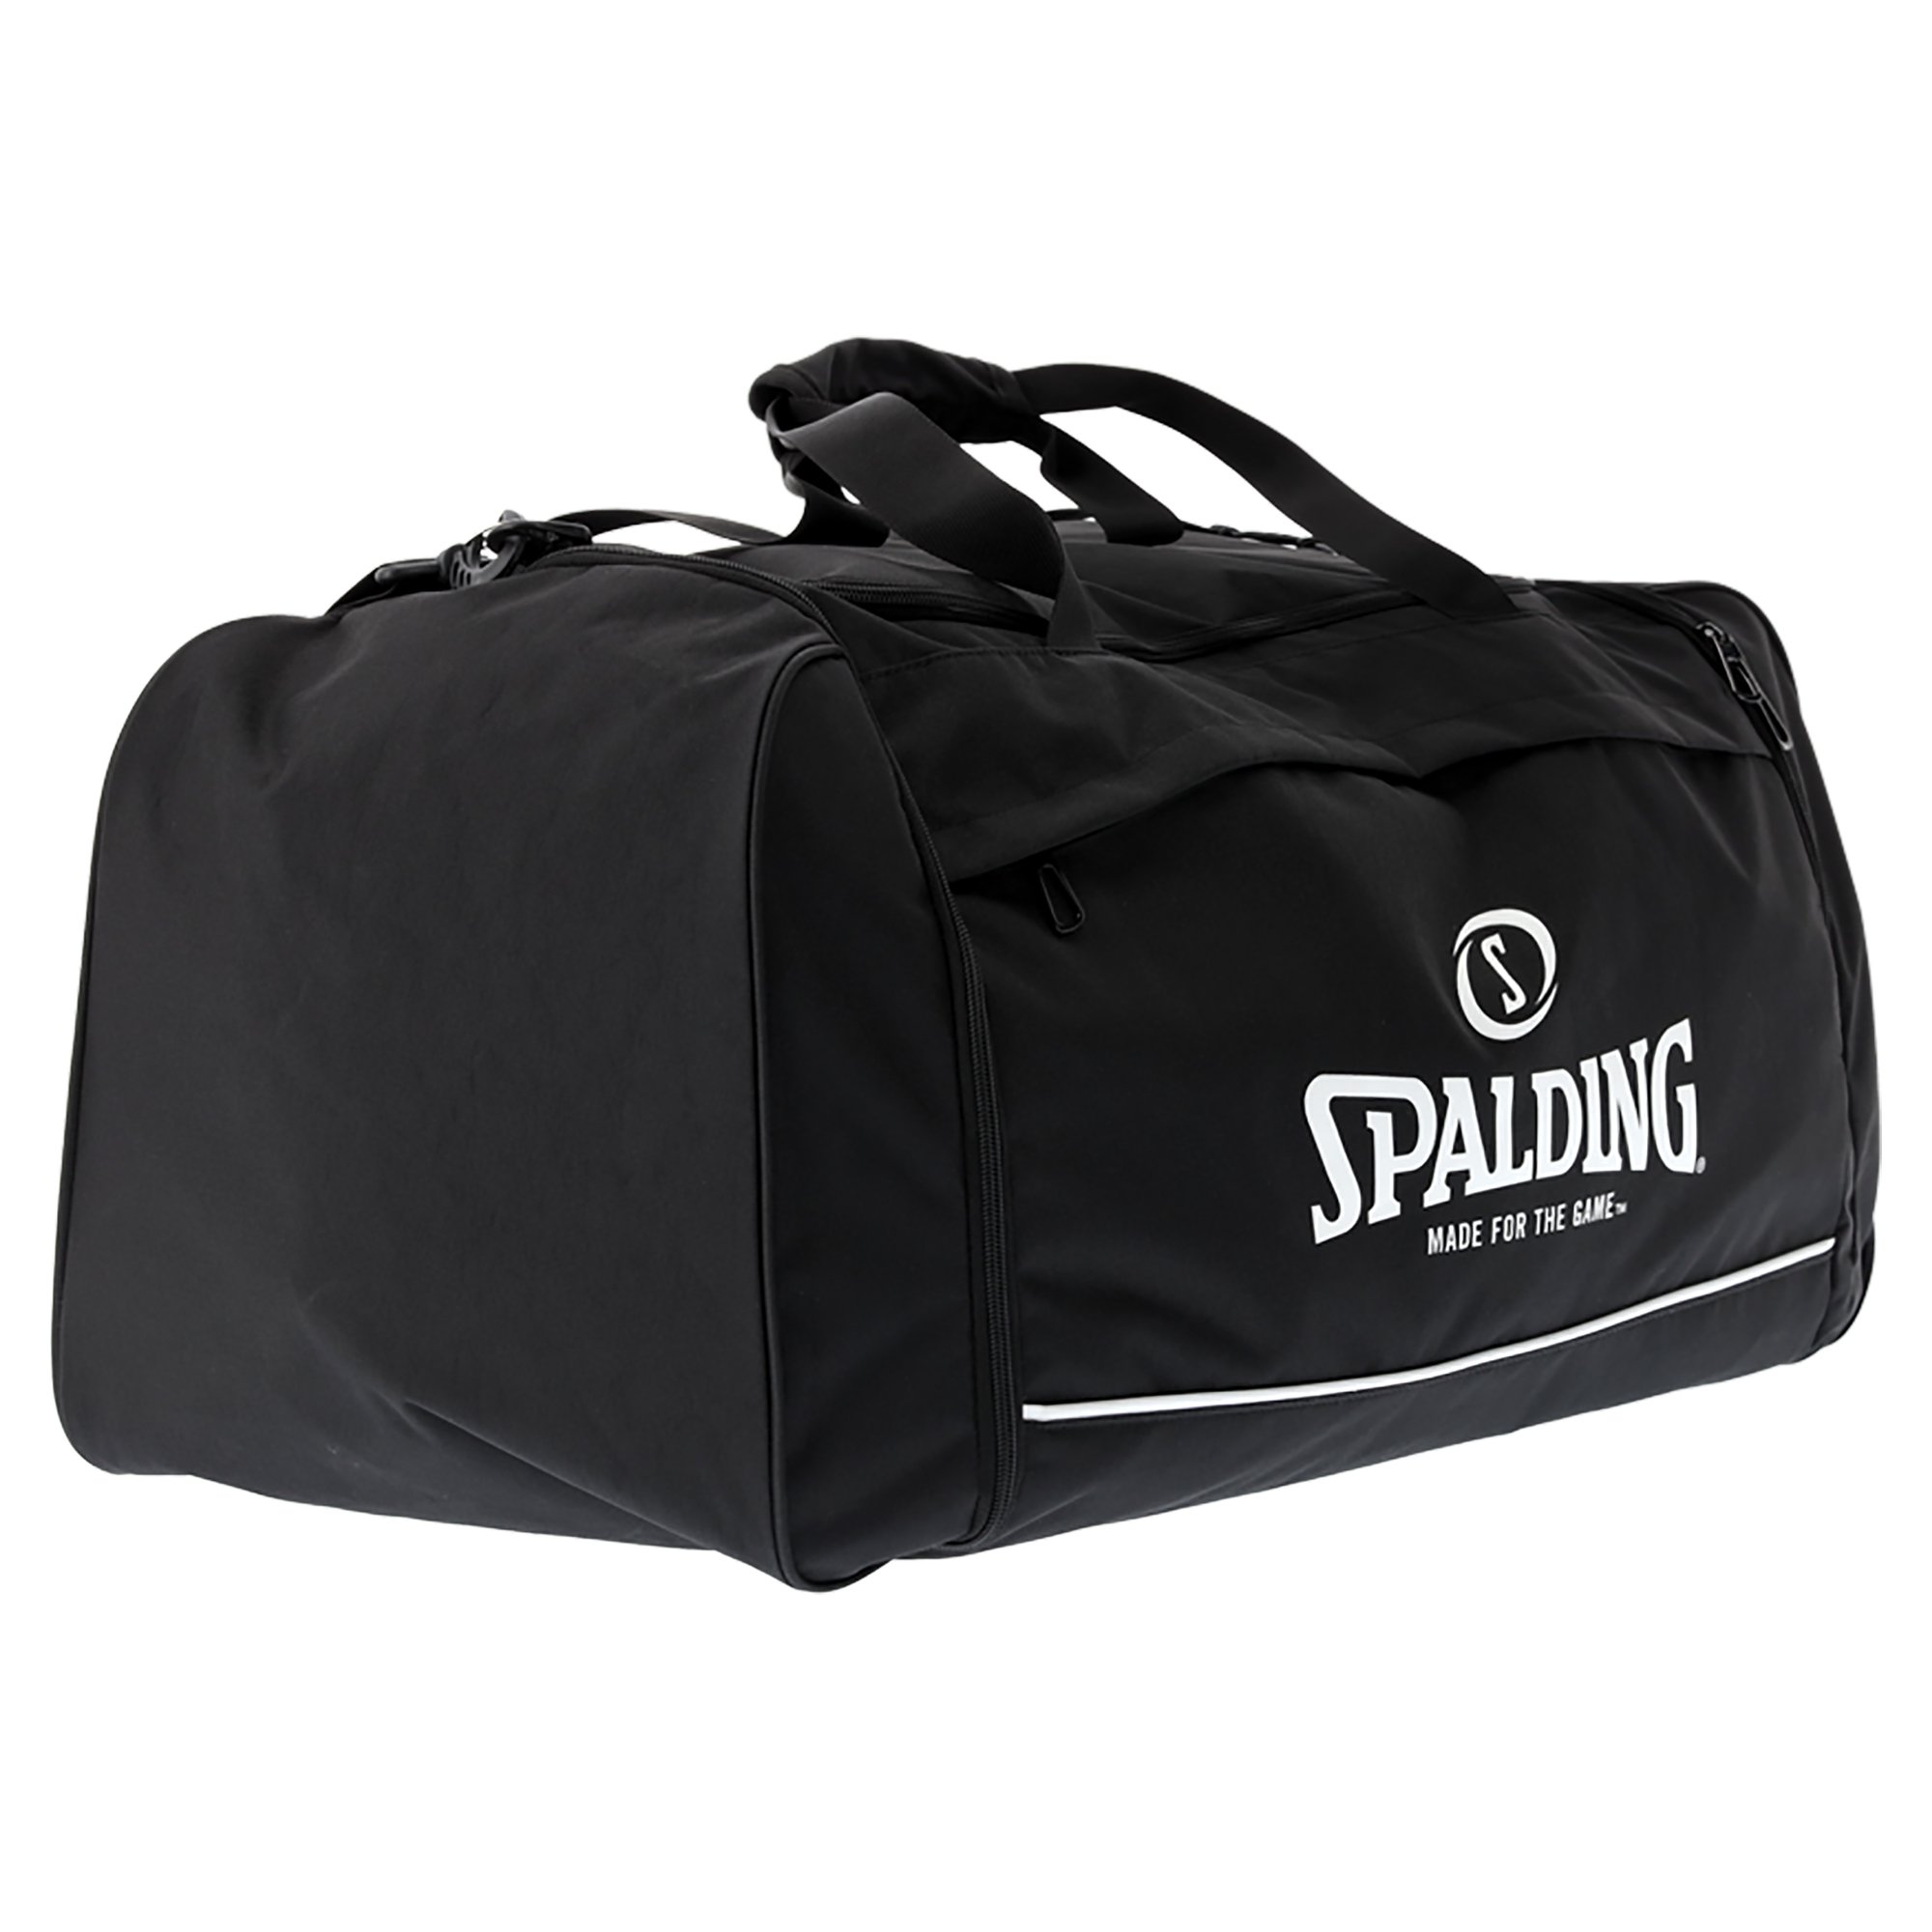 Spalding Team Bag Large